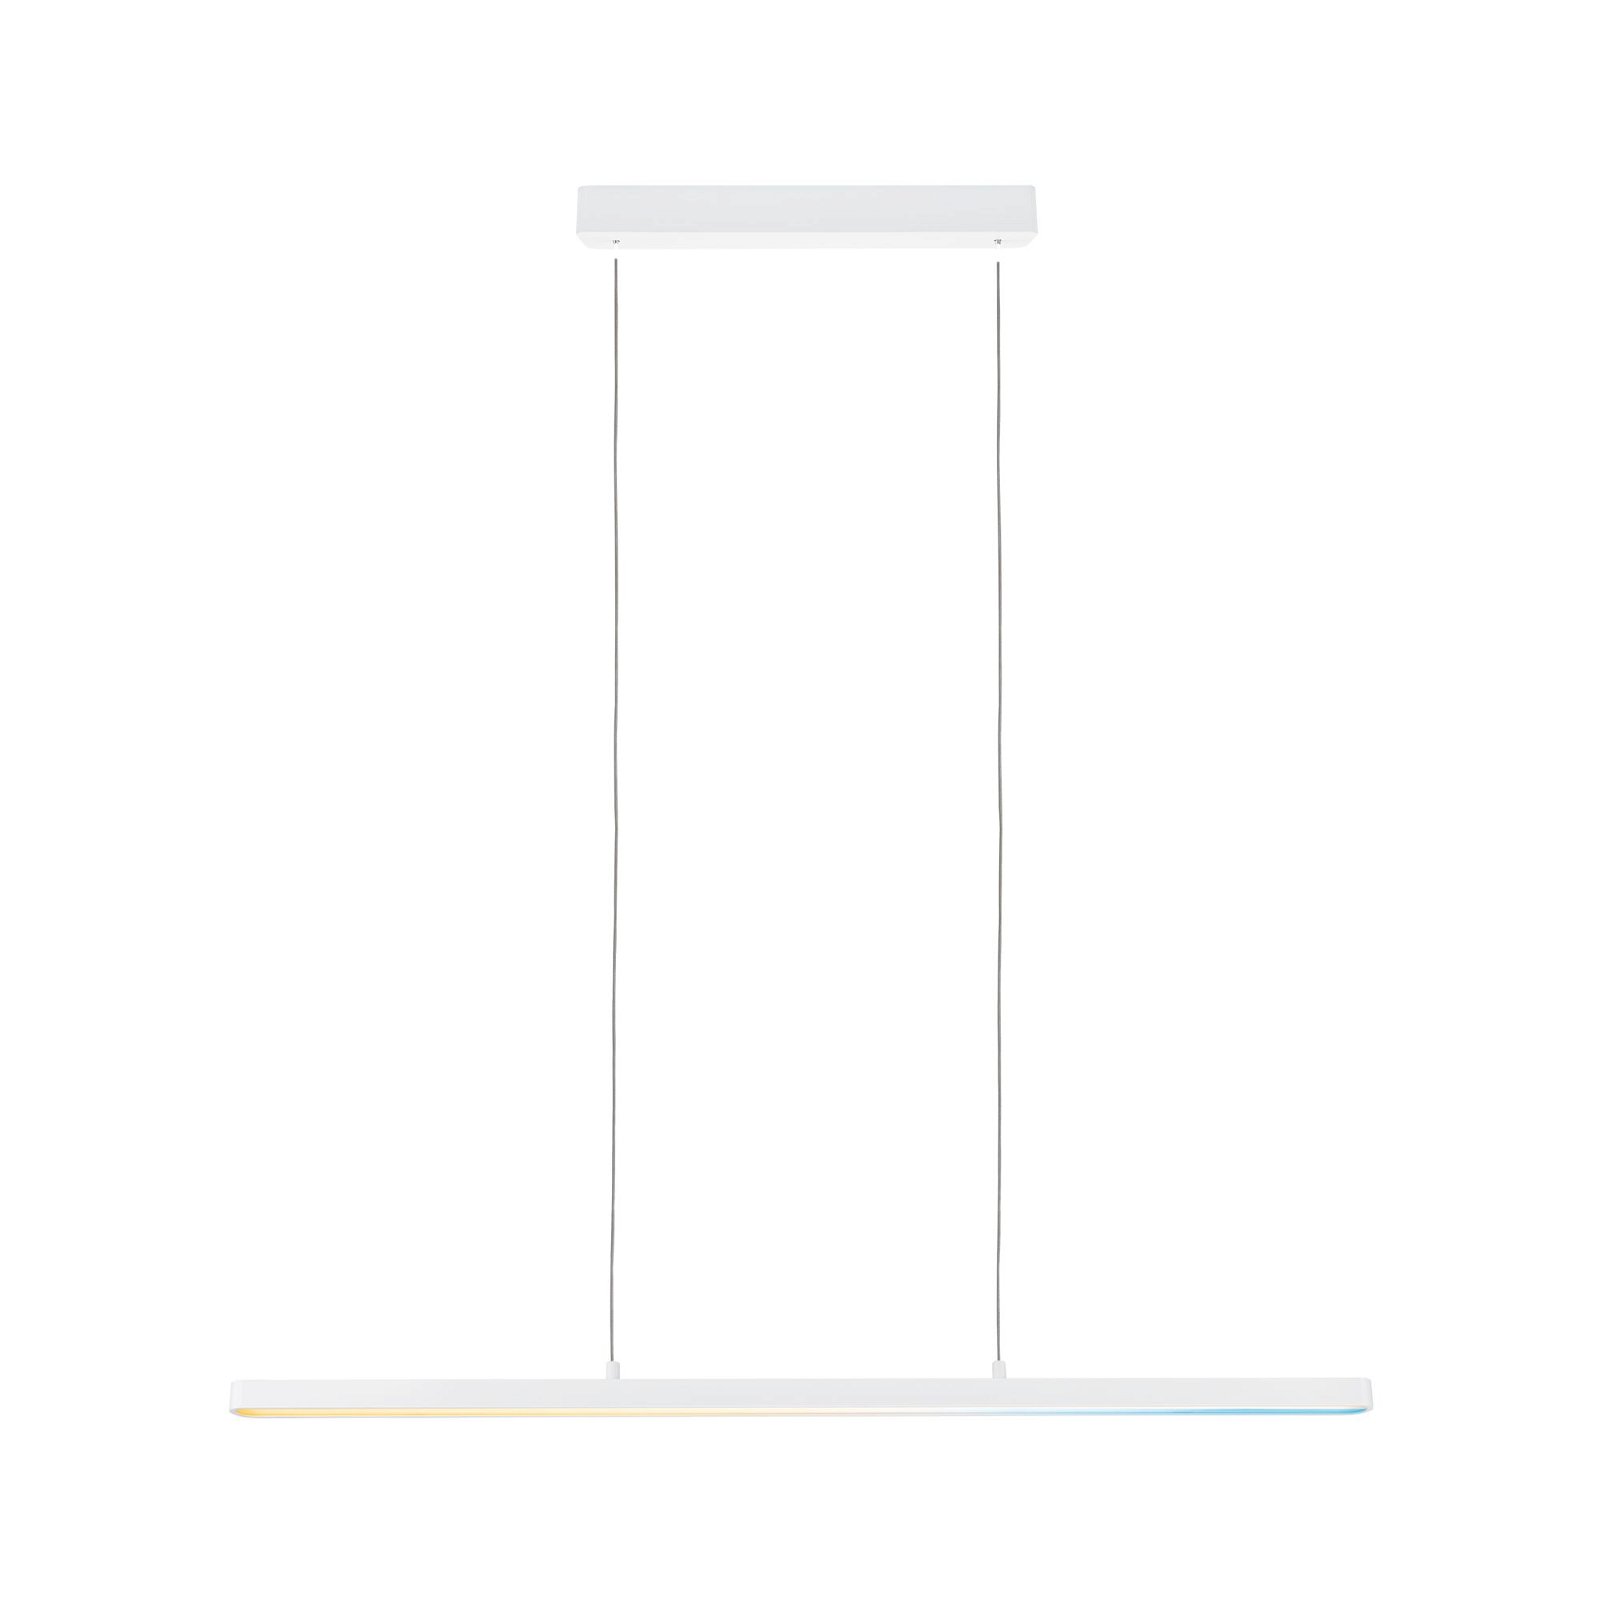 LED-hanglamp Smart Home Zigbee 3.0 Lento Tunable White 3x2100lm 3x13,5W Wit mat dimbaar